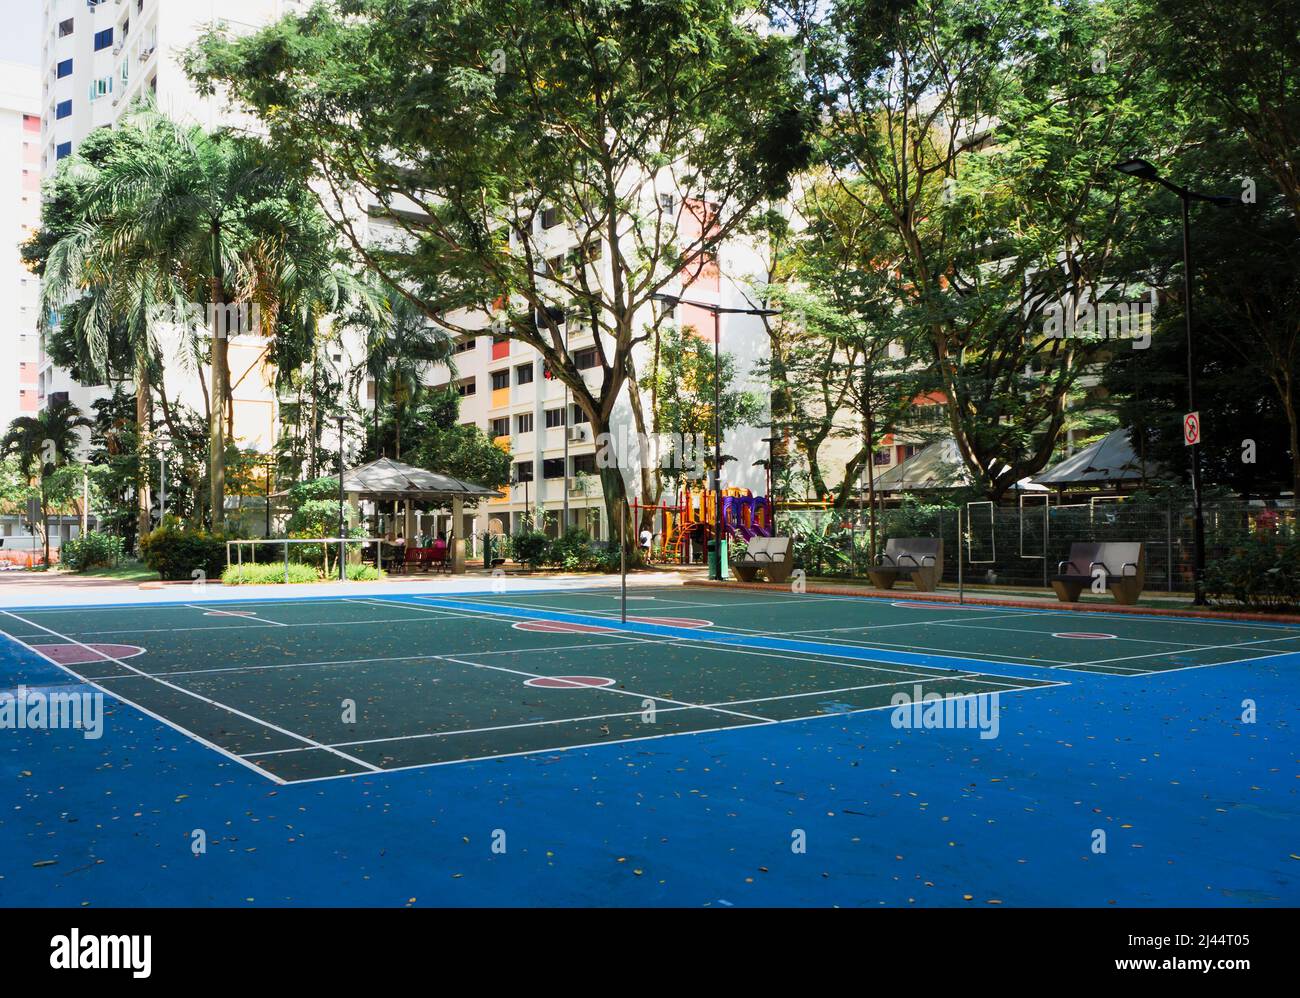 Terrain de badminton vide dans un quartier résidentiel calme par une journée ensoleillée. Banque D'Images